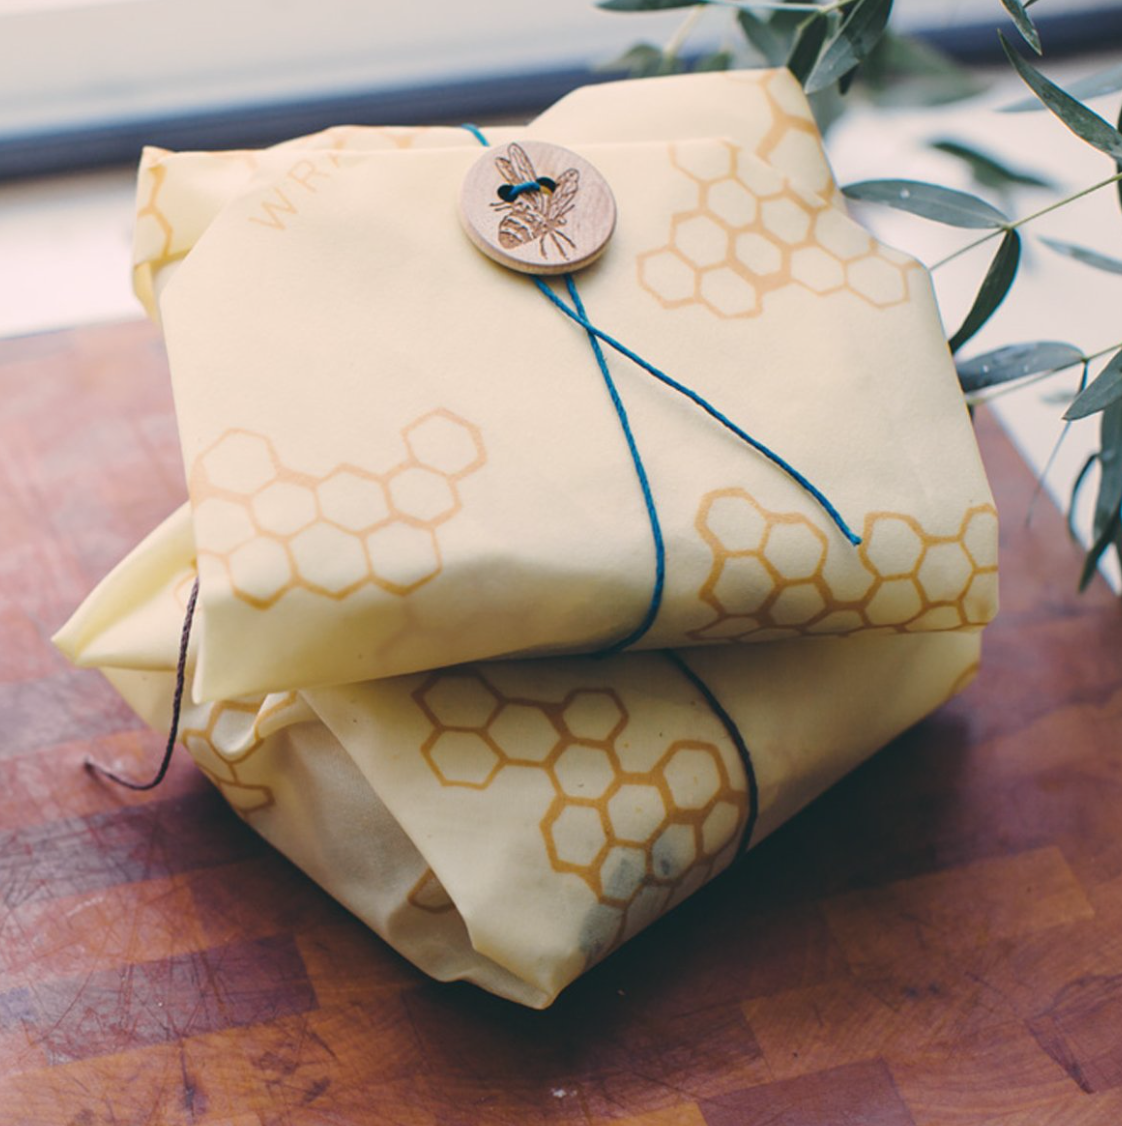 Bee's Wrap - Sandwich Wrap